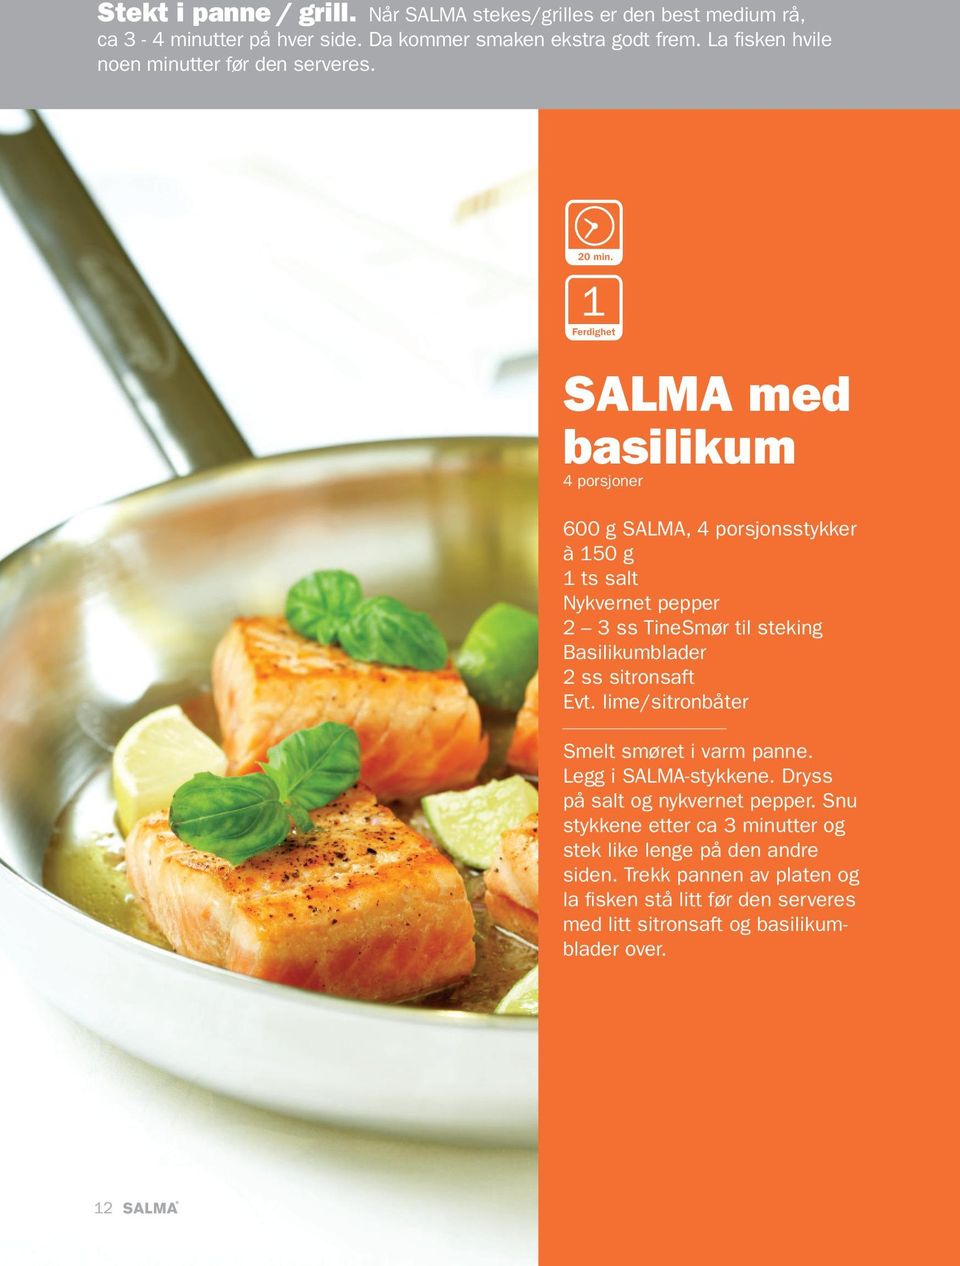 SALMA med basilikum 4 porsjoner 600 g SALMA, 4 porsjonsstykker à 150 g 1 ts salt Nykvernet pepper 2 3 ss TineSmør til steking Basilikumblader 2 ss sitronsaft